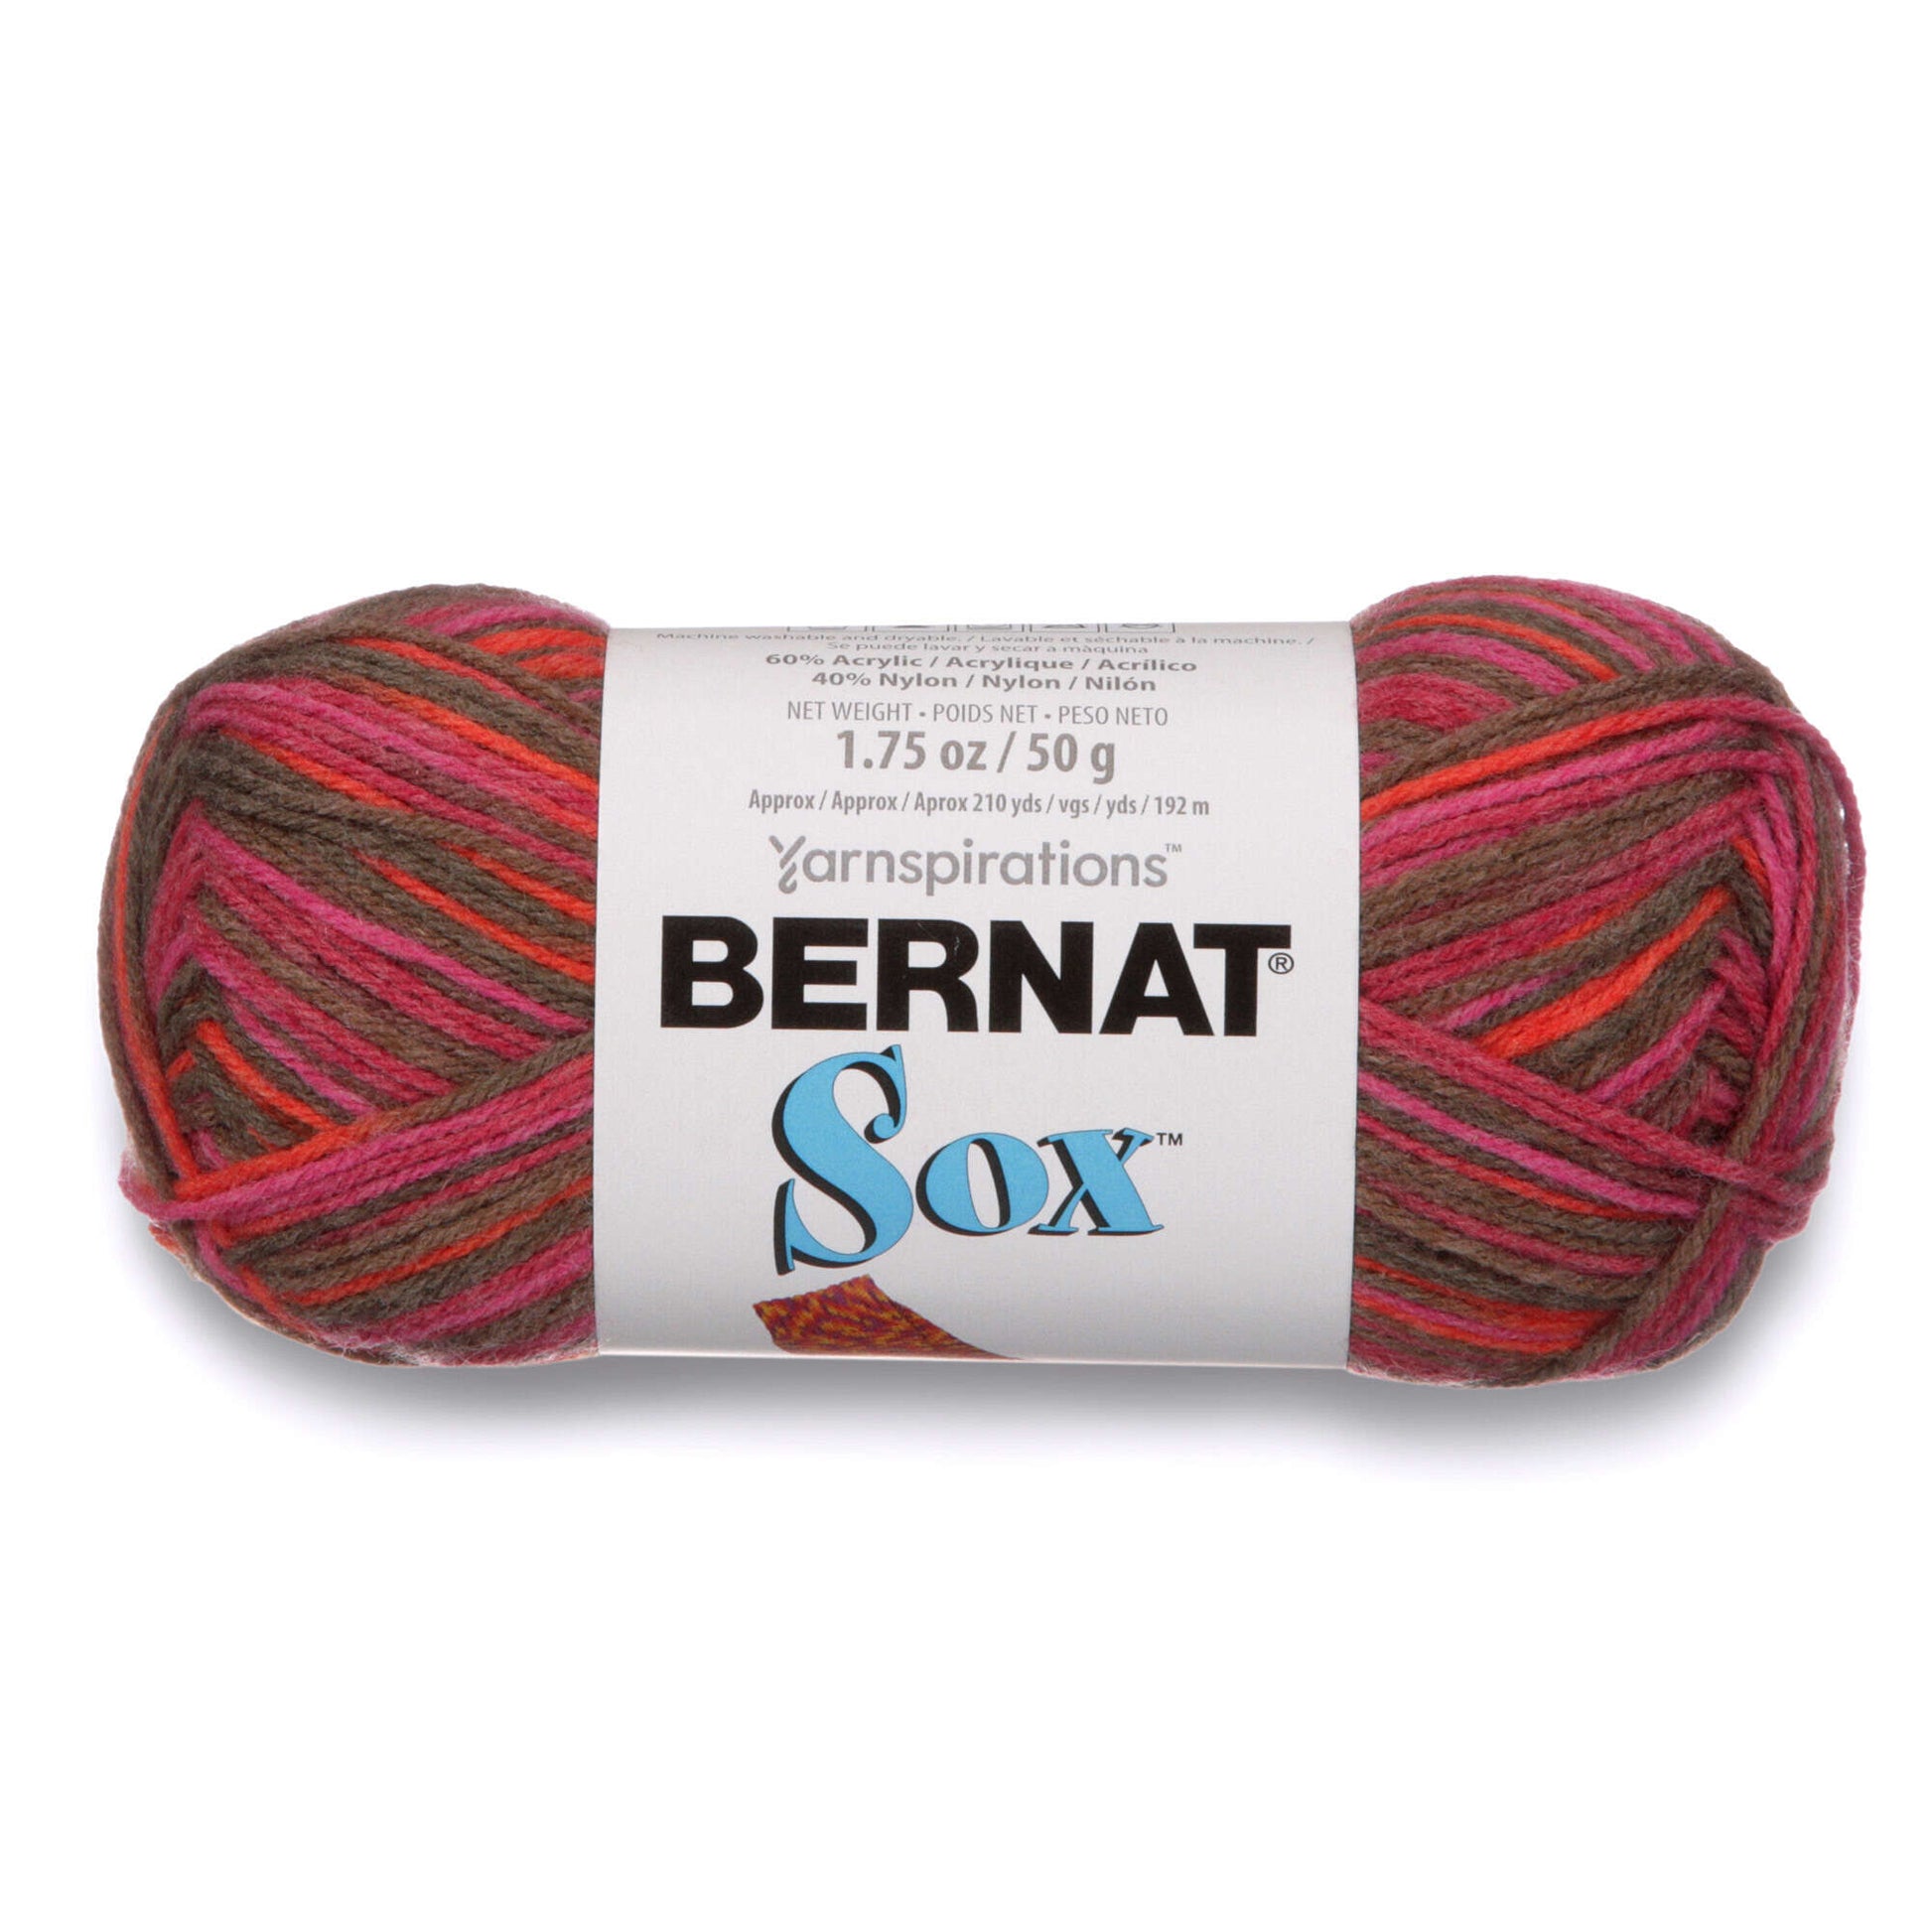 Bernat Sox Yarn - Discontinued Shades Sangria